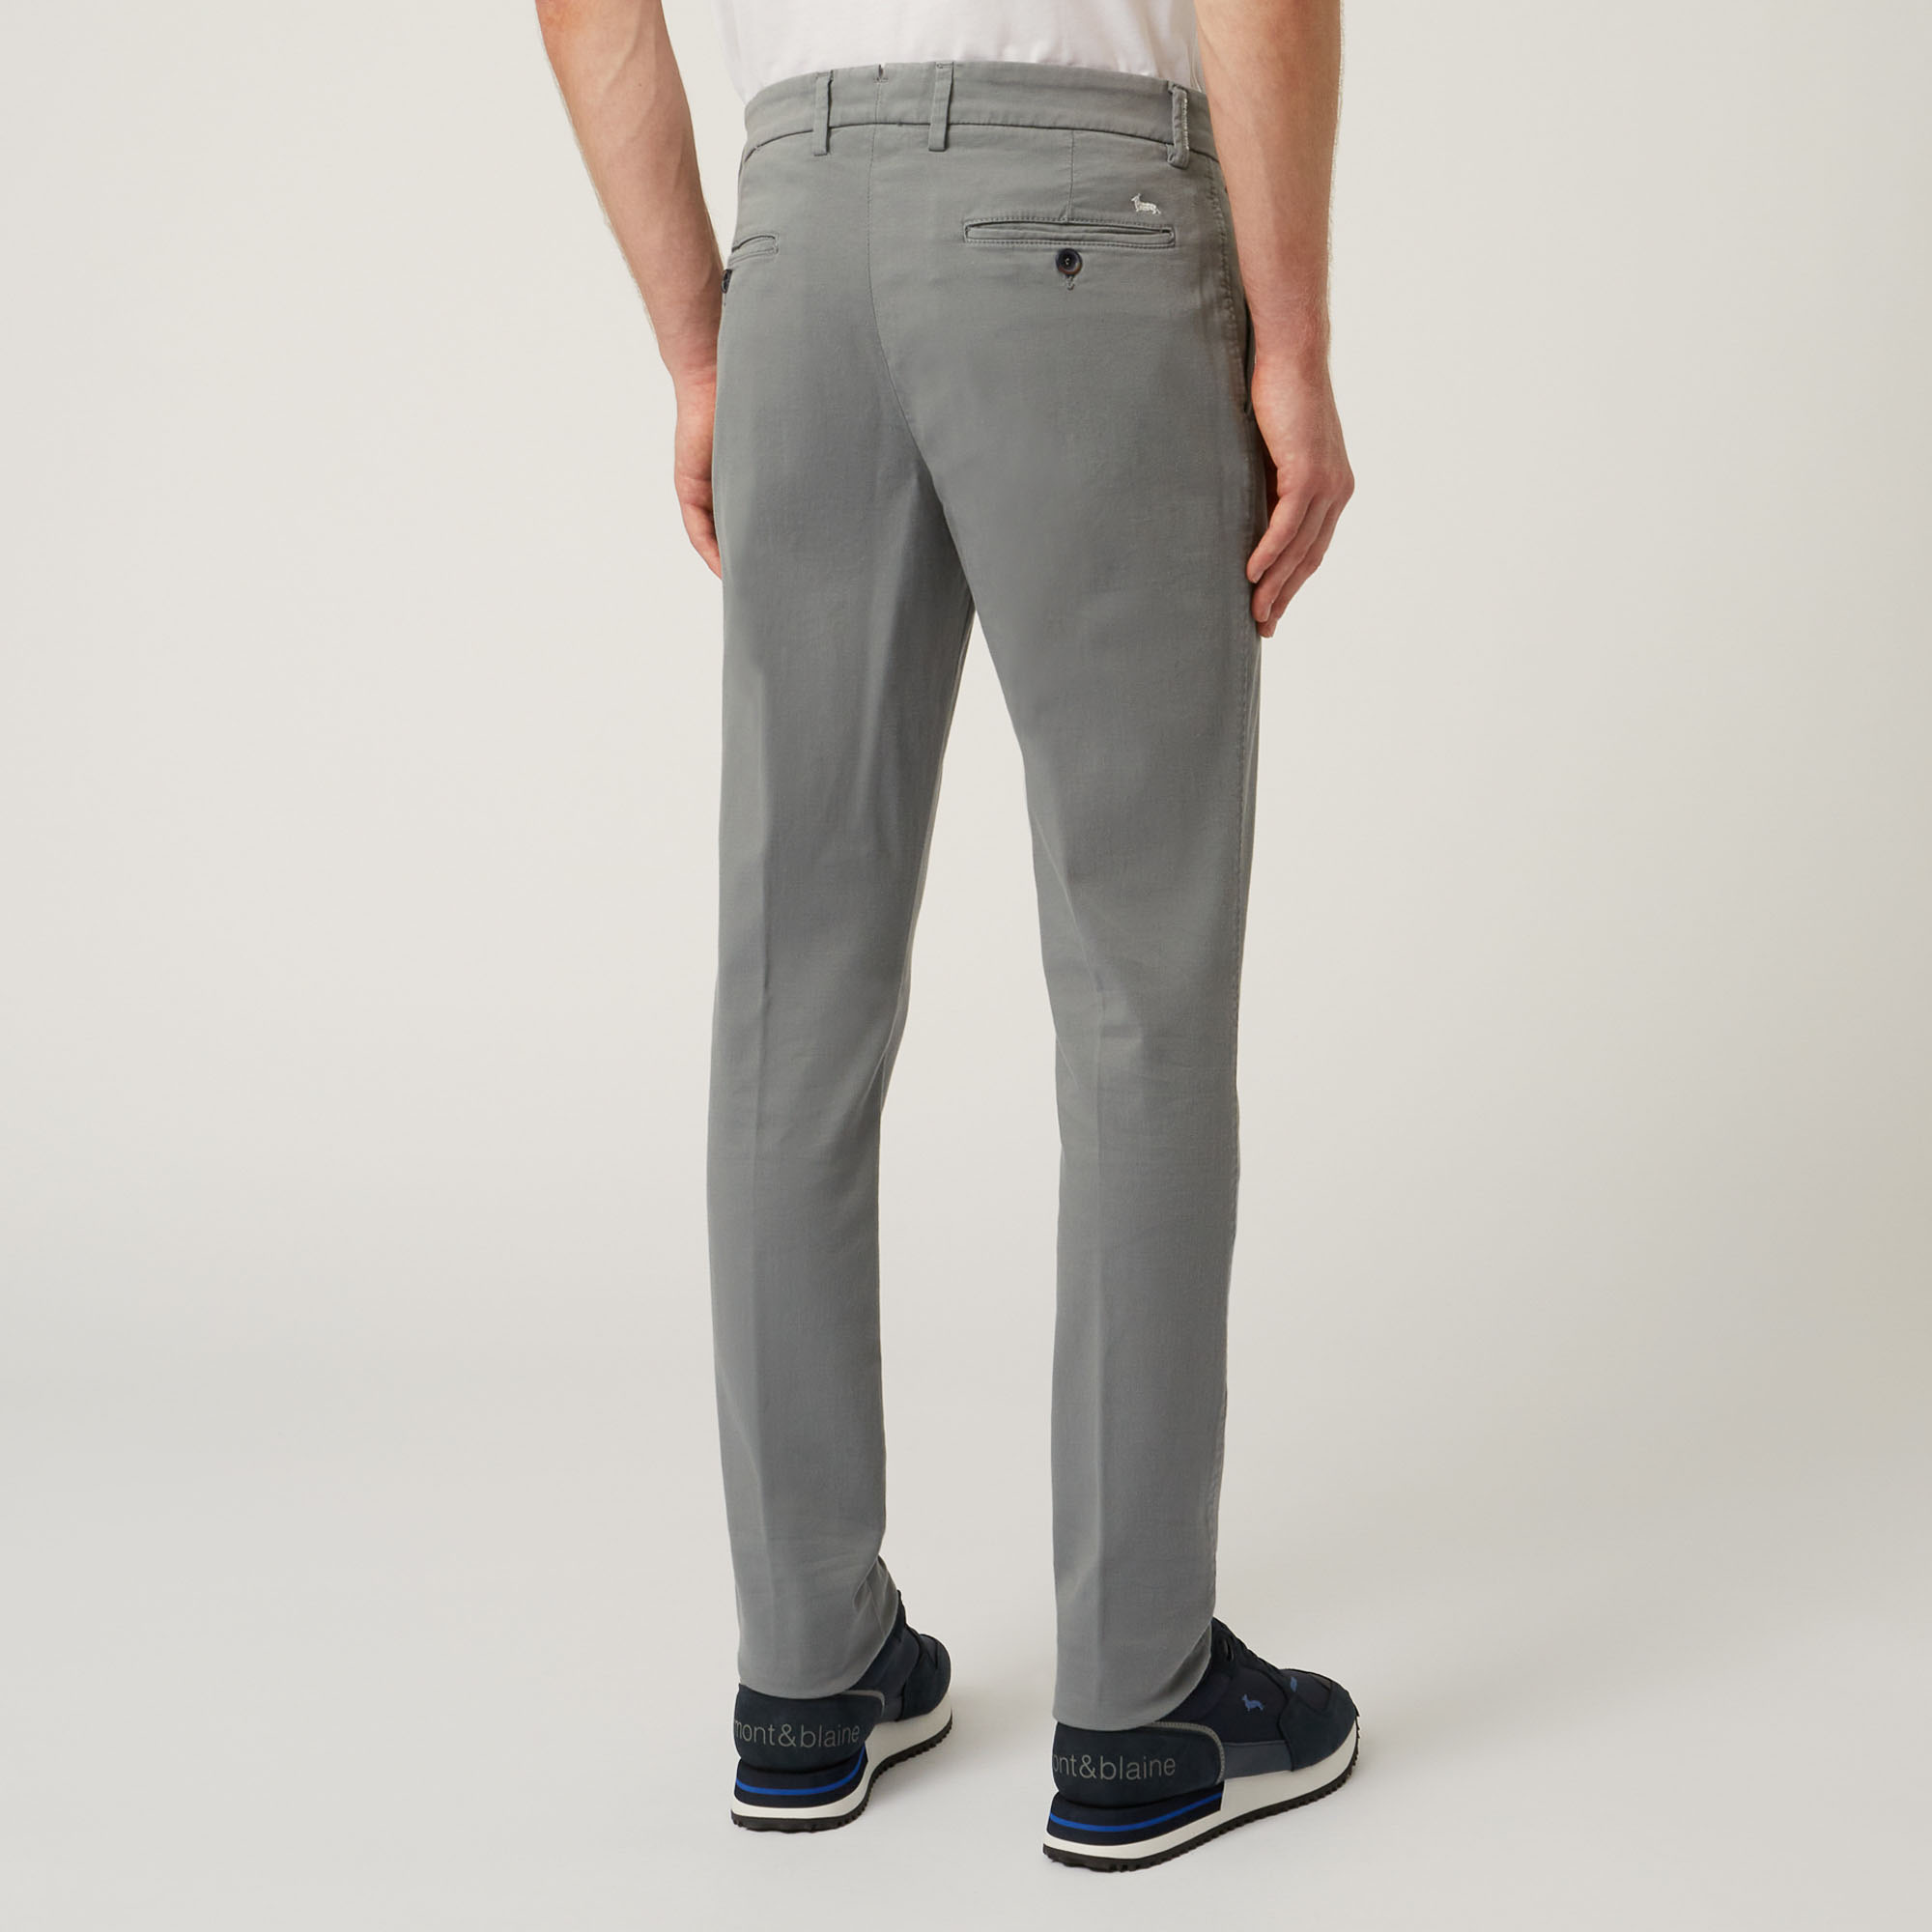 Pantalone Essentials in cotone stretch, Grigio, large image number 1